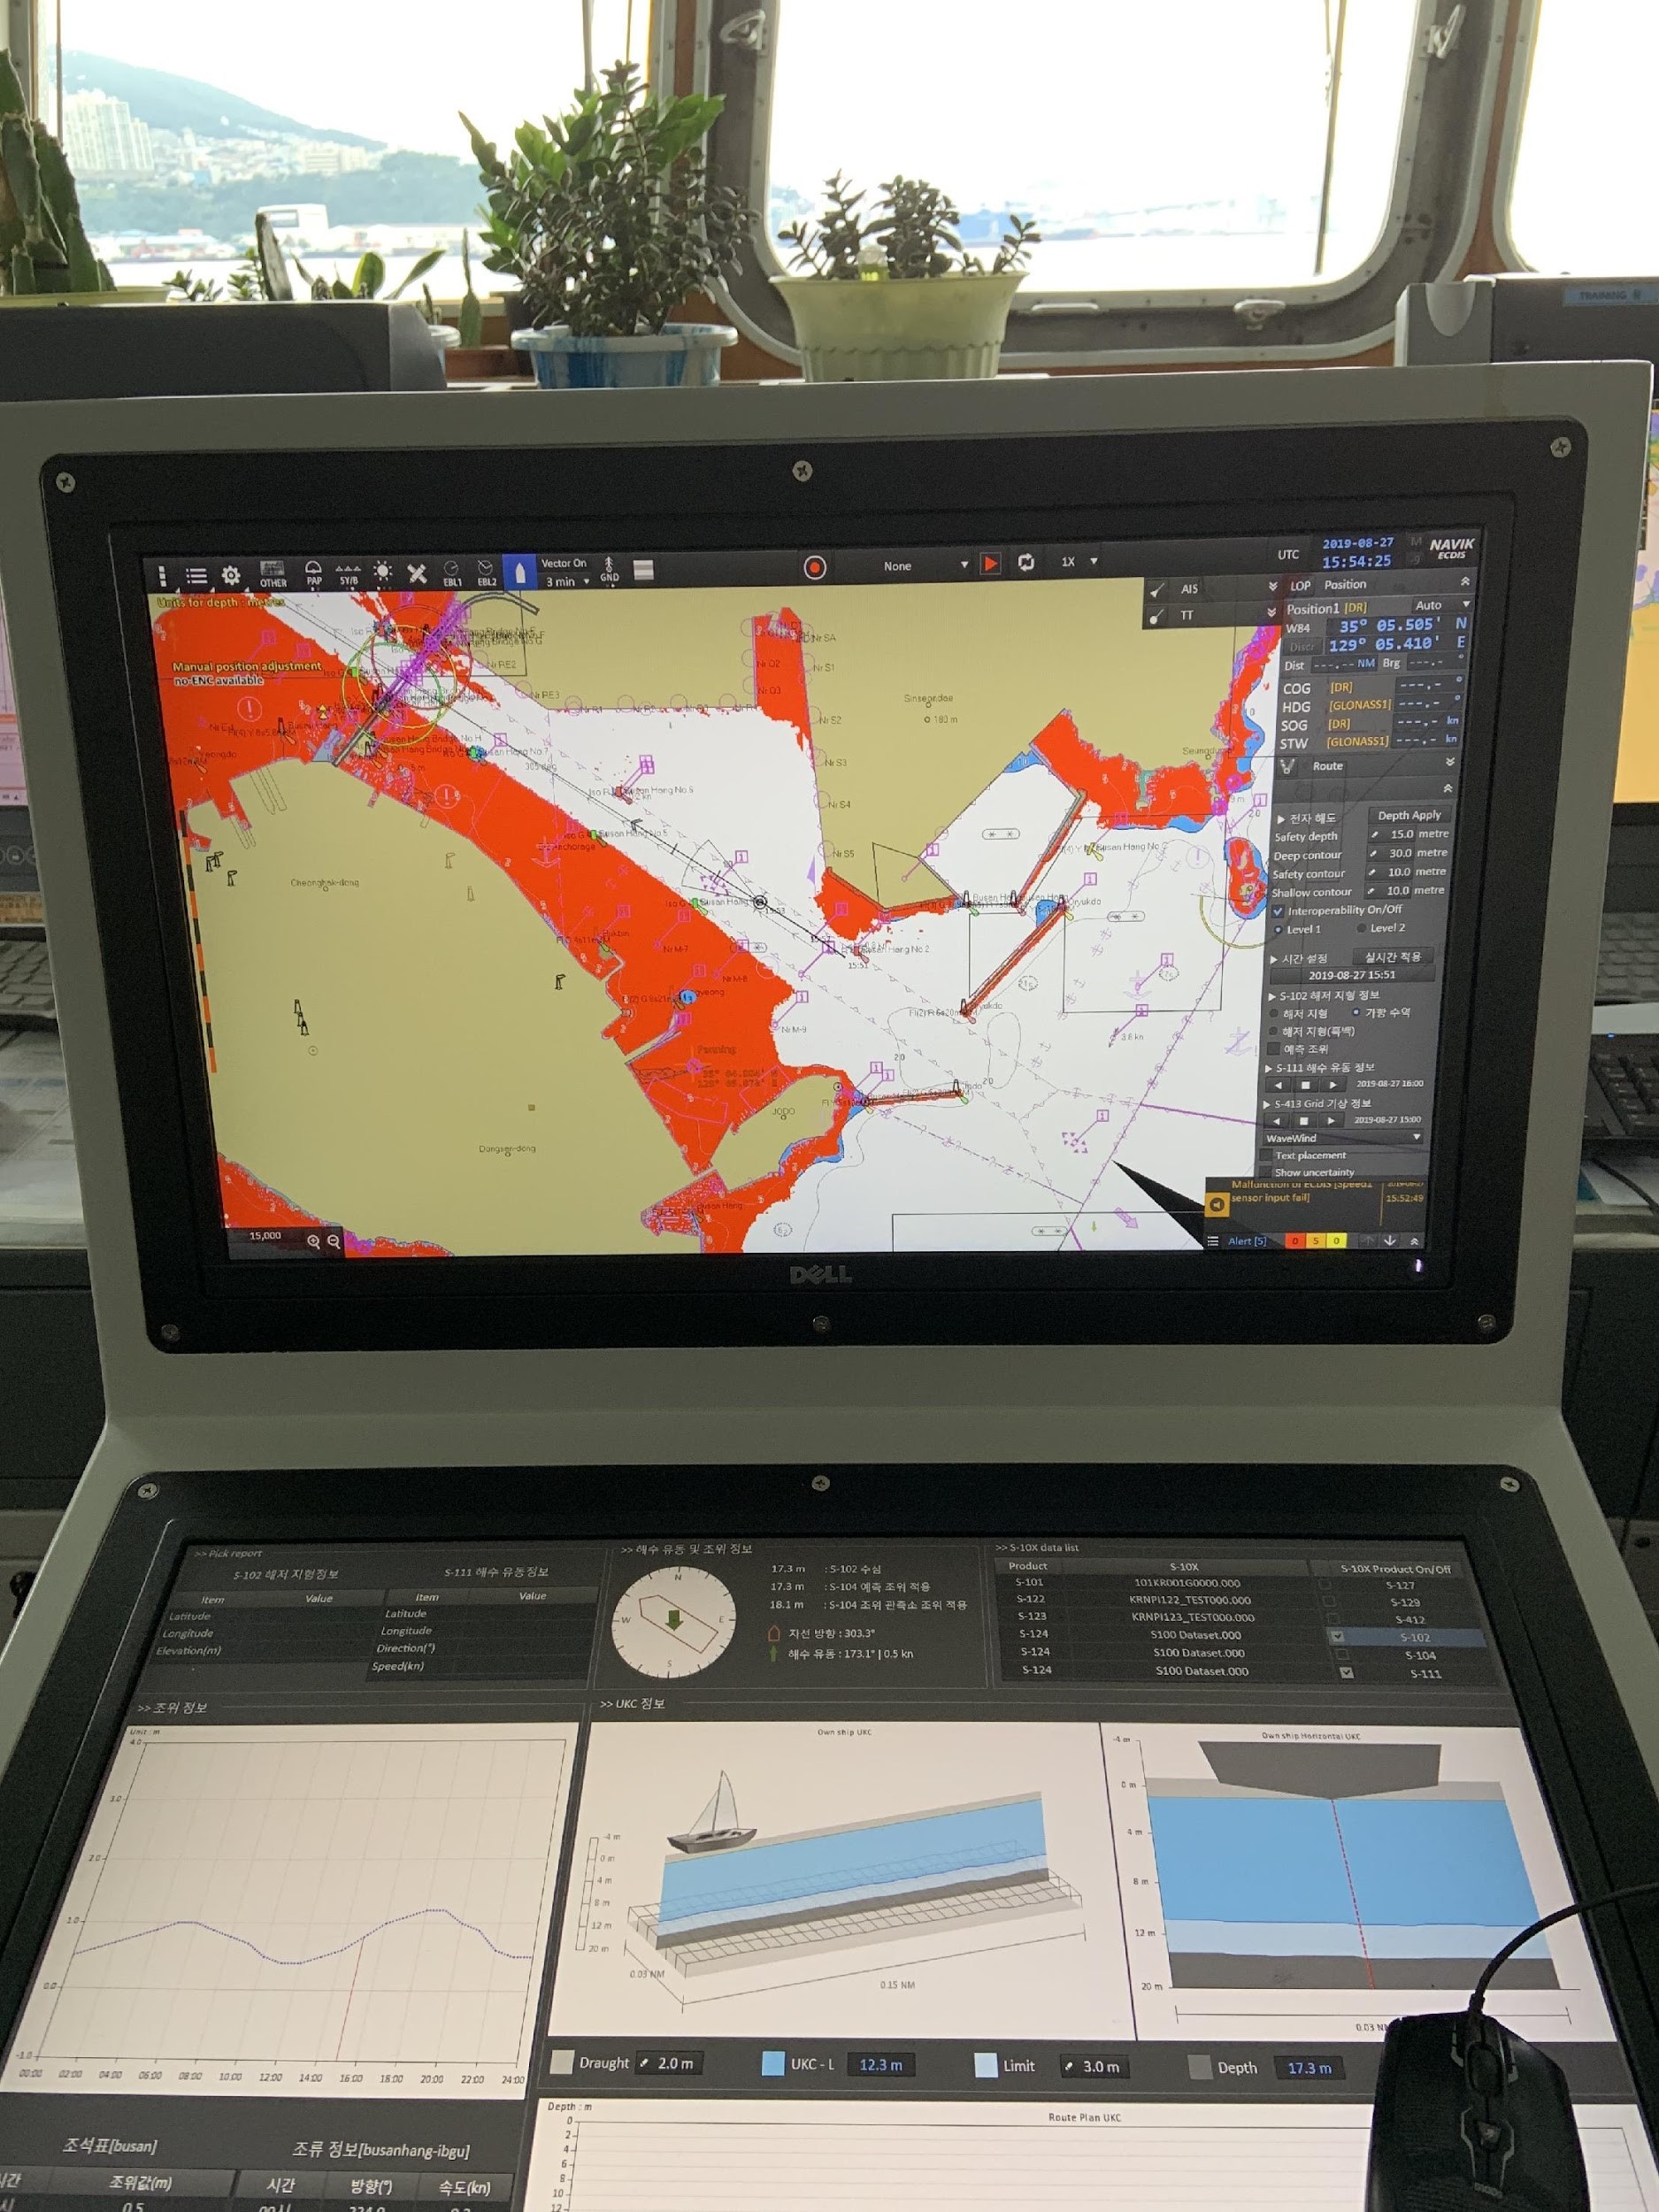 S-100 prototype ECDIS displaying S-101 electronic navigational chart.